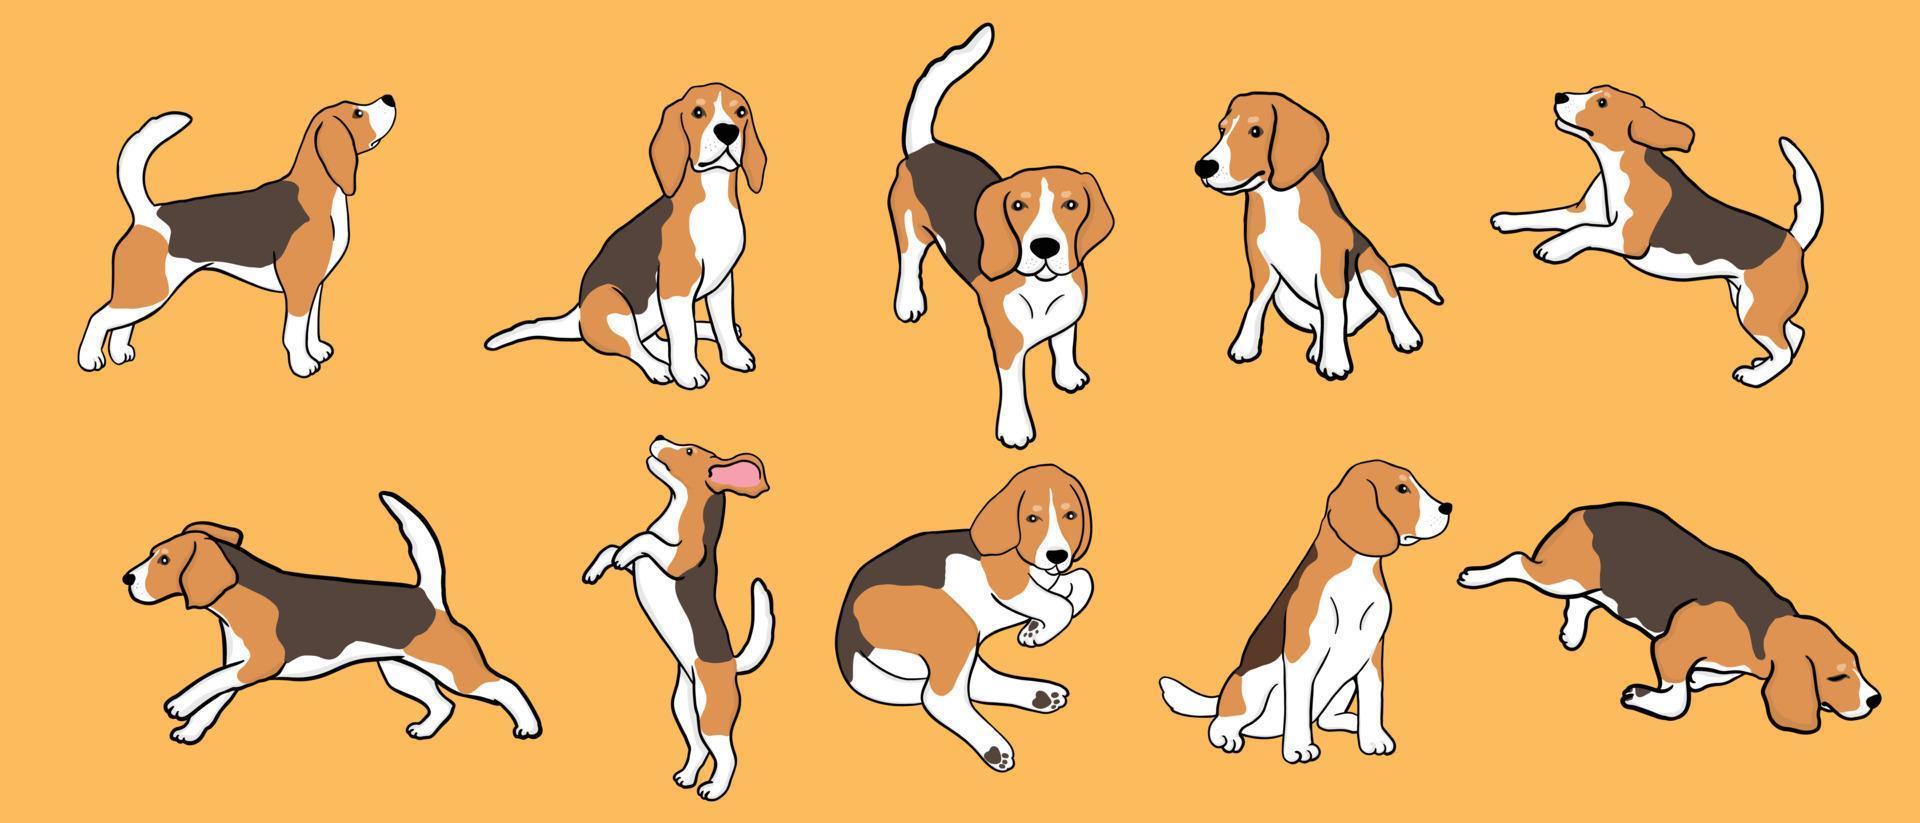 Set von Beagle-Hunden in verschiedenen Posen. kleiner Jagdhund mit braun-weißem Fell und langen Ohren. Welpe mit süßer Schnauze auf gelbem Hintergrund vektor